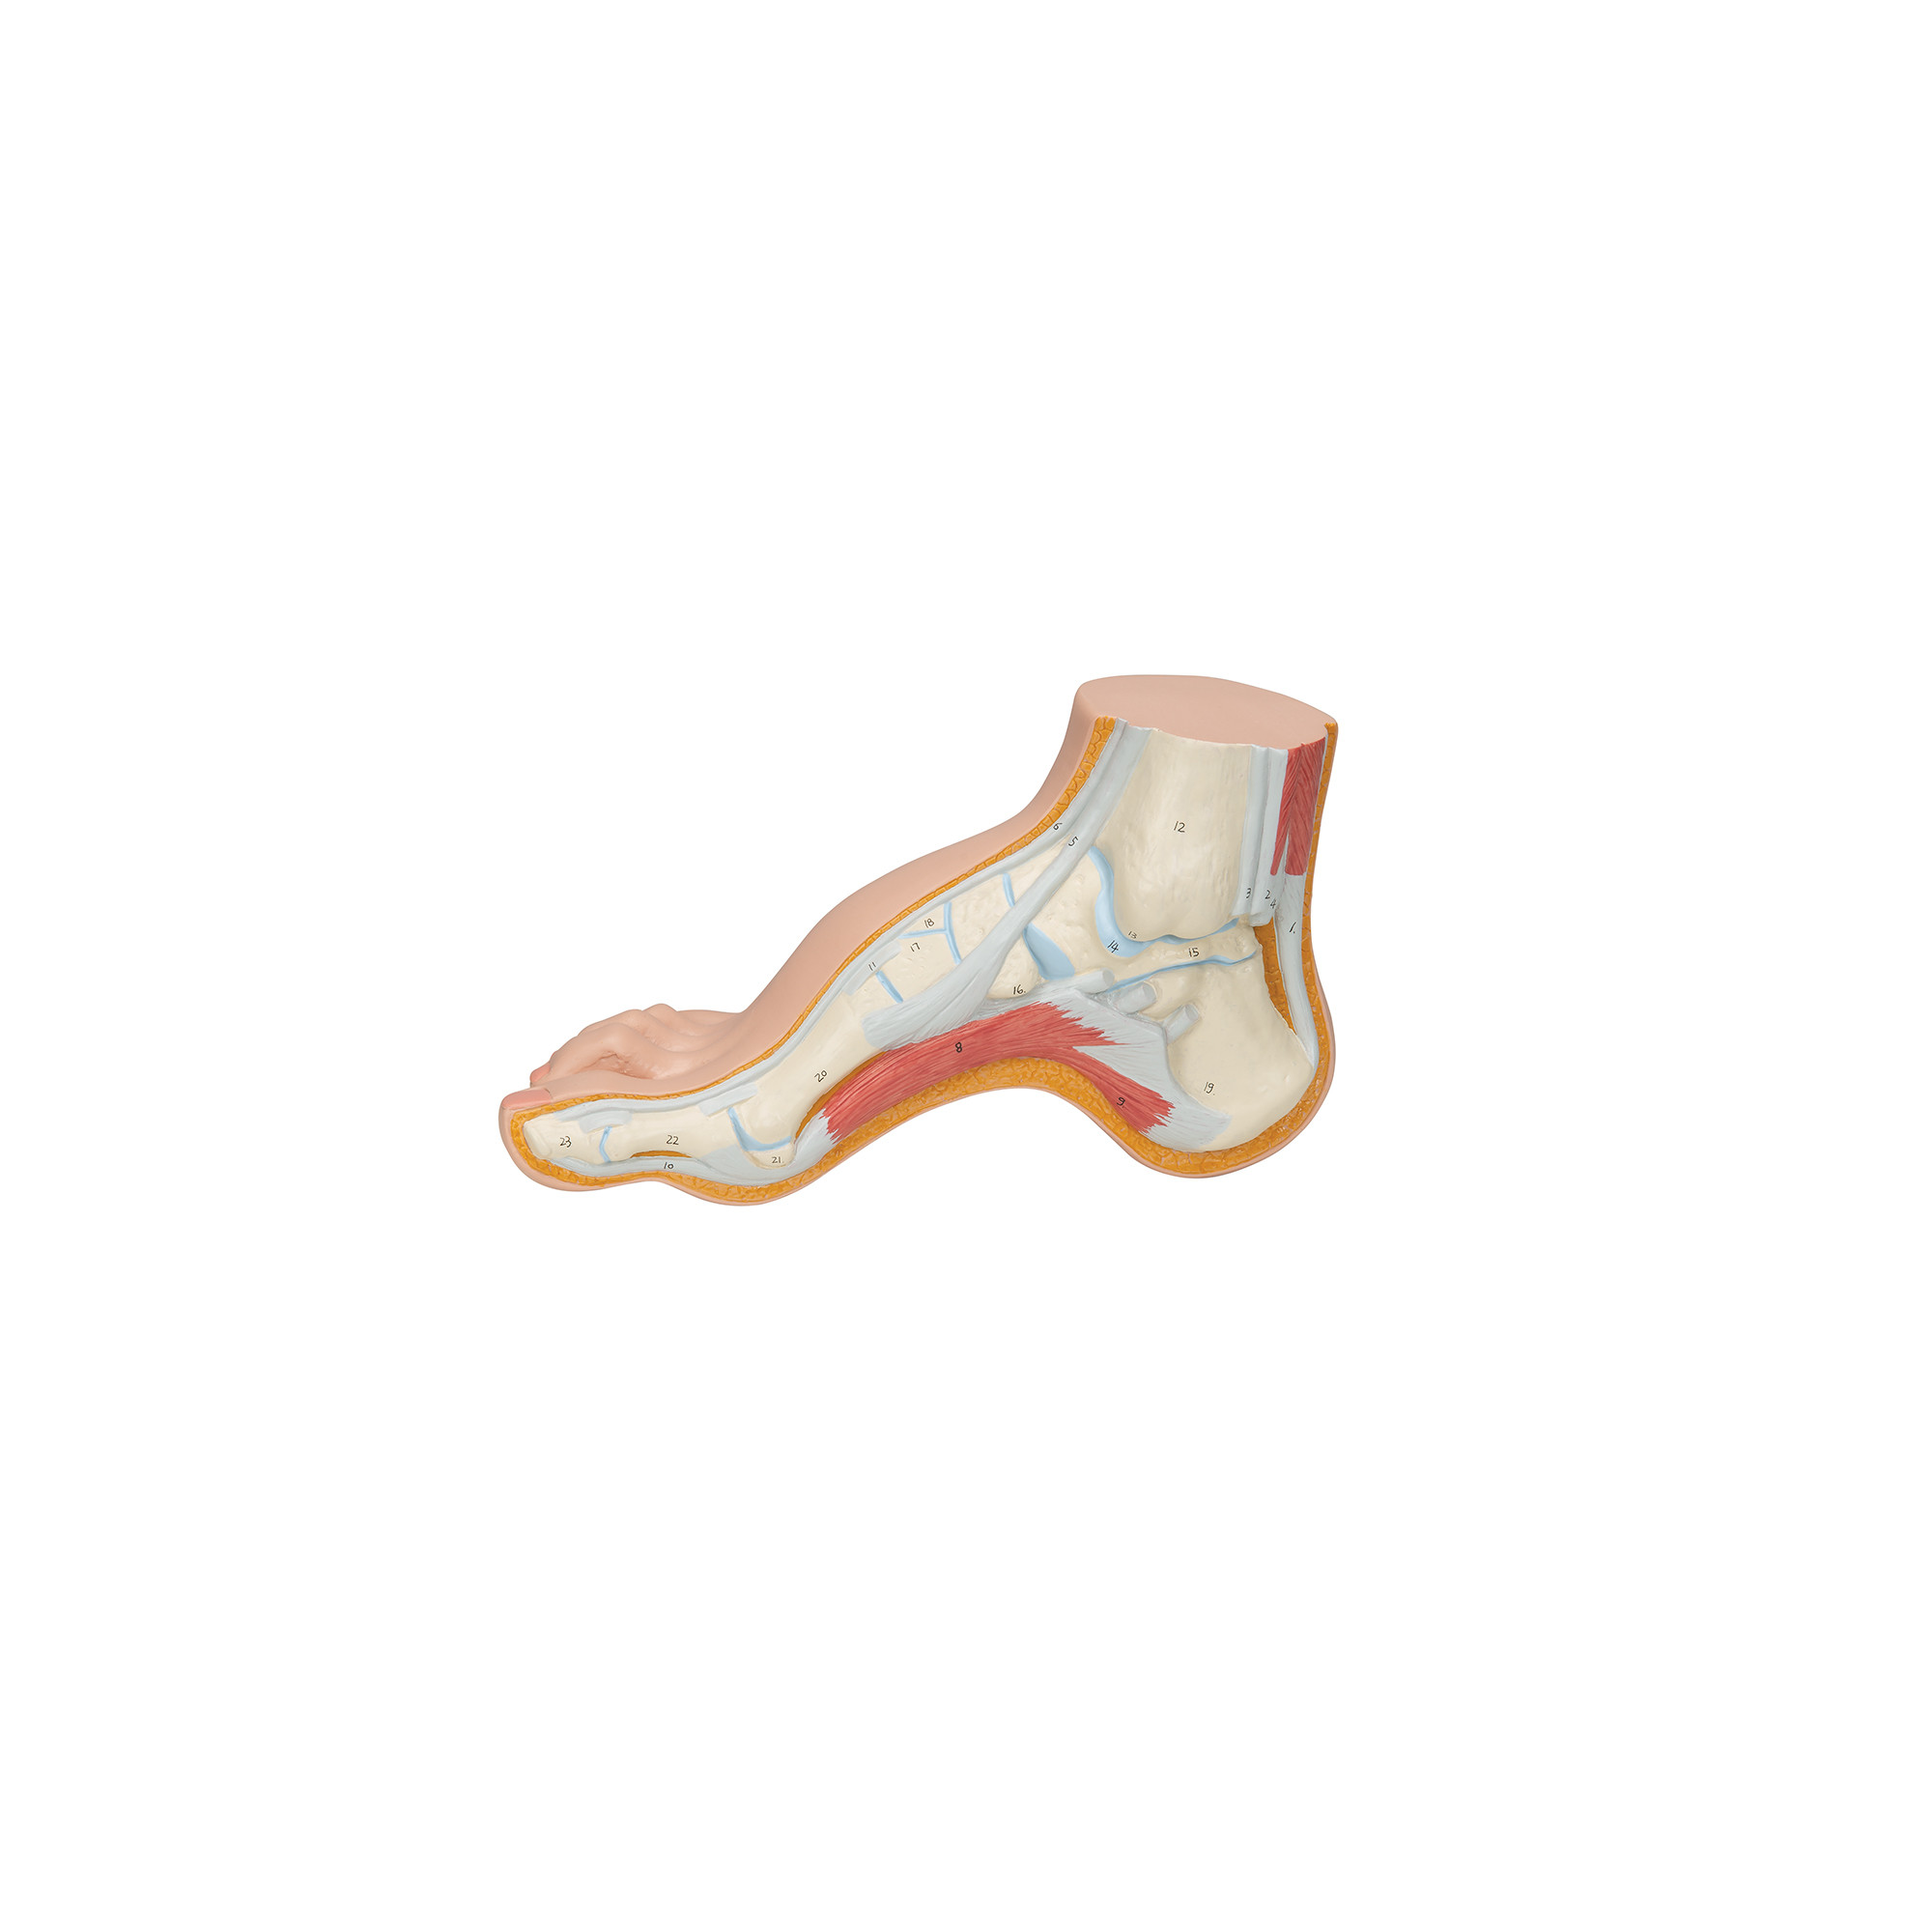 Squelette d'un pied creux (Pes Cavus)